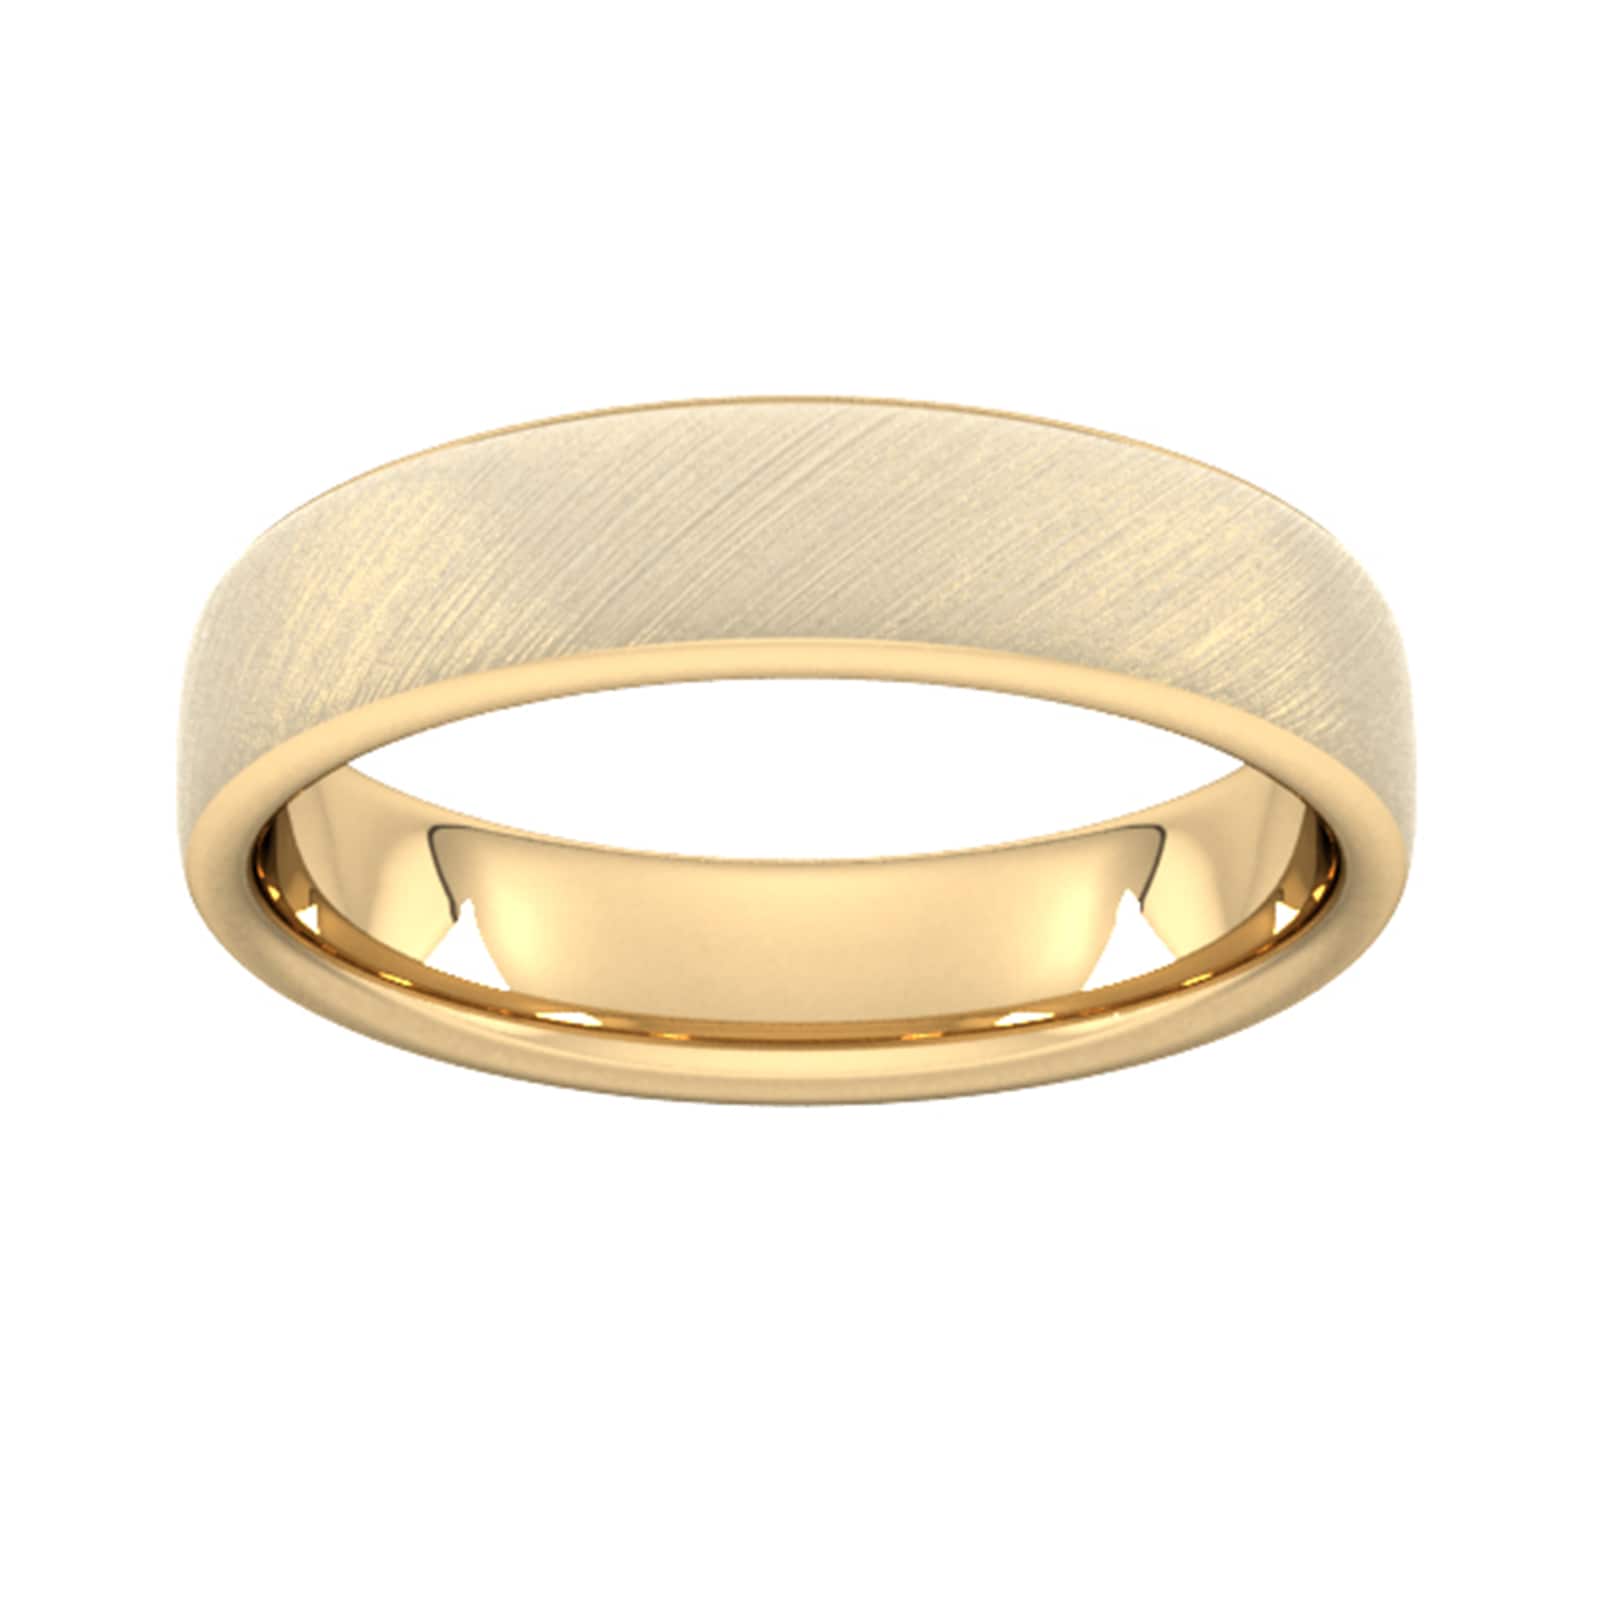 5mm Slight Court Standard Diagonal Matt Finish Wedding Ring In 18 Carat Yellow Gold - Ring Size R